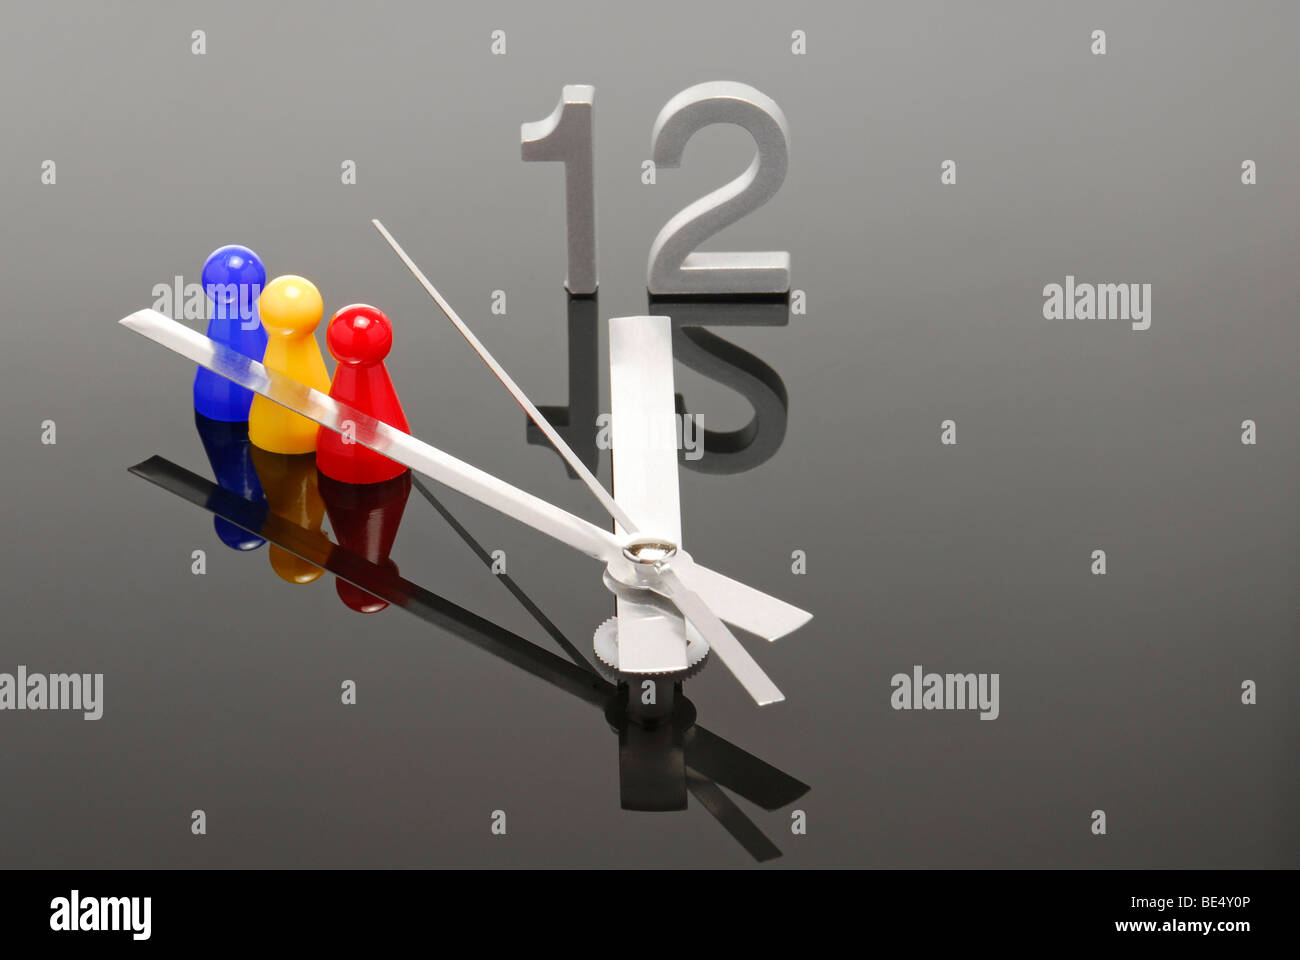 Pièces de jeu avec horloge montrant cinq à douze, image symbolique pour l'équipe fait face à la crise Banque D'Images